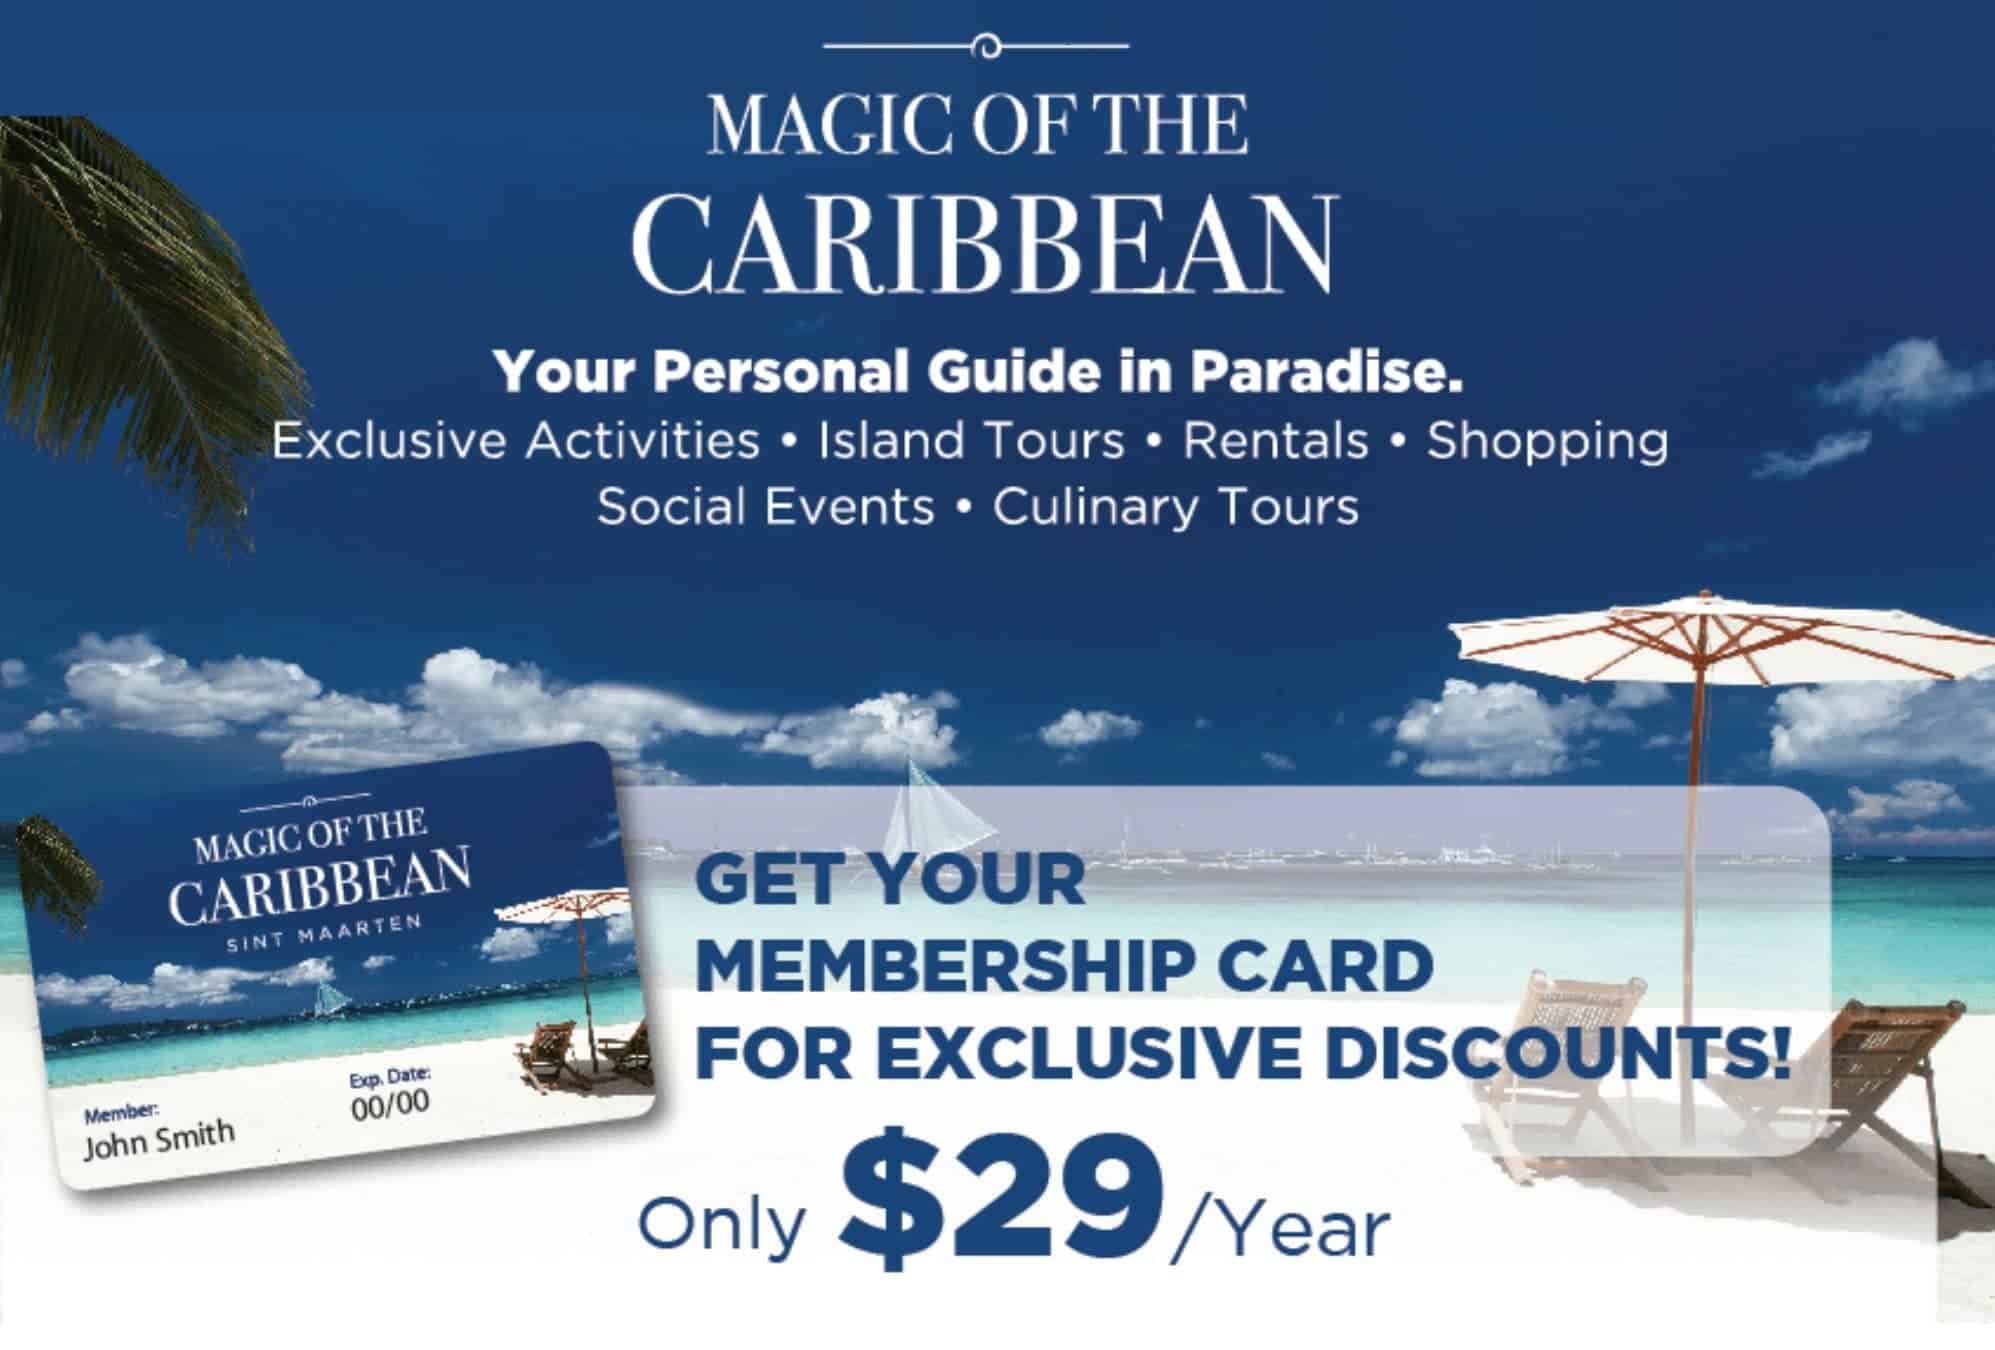 Get Your Magic of the Caribbean Card and save money. für ein Für ein Tourangebot in der Karibik